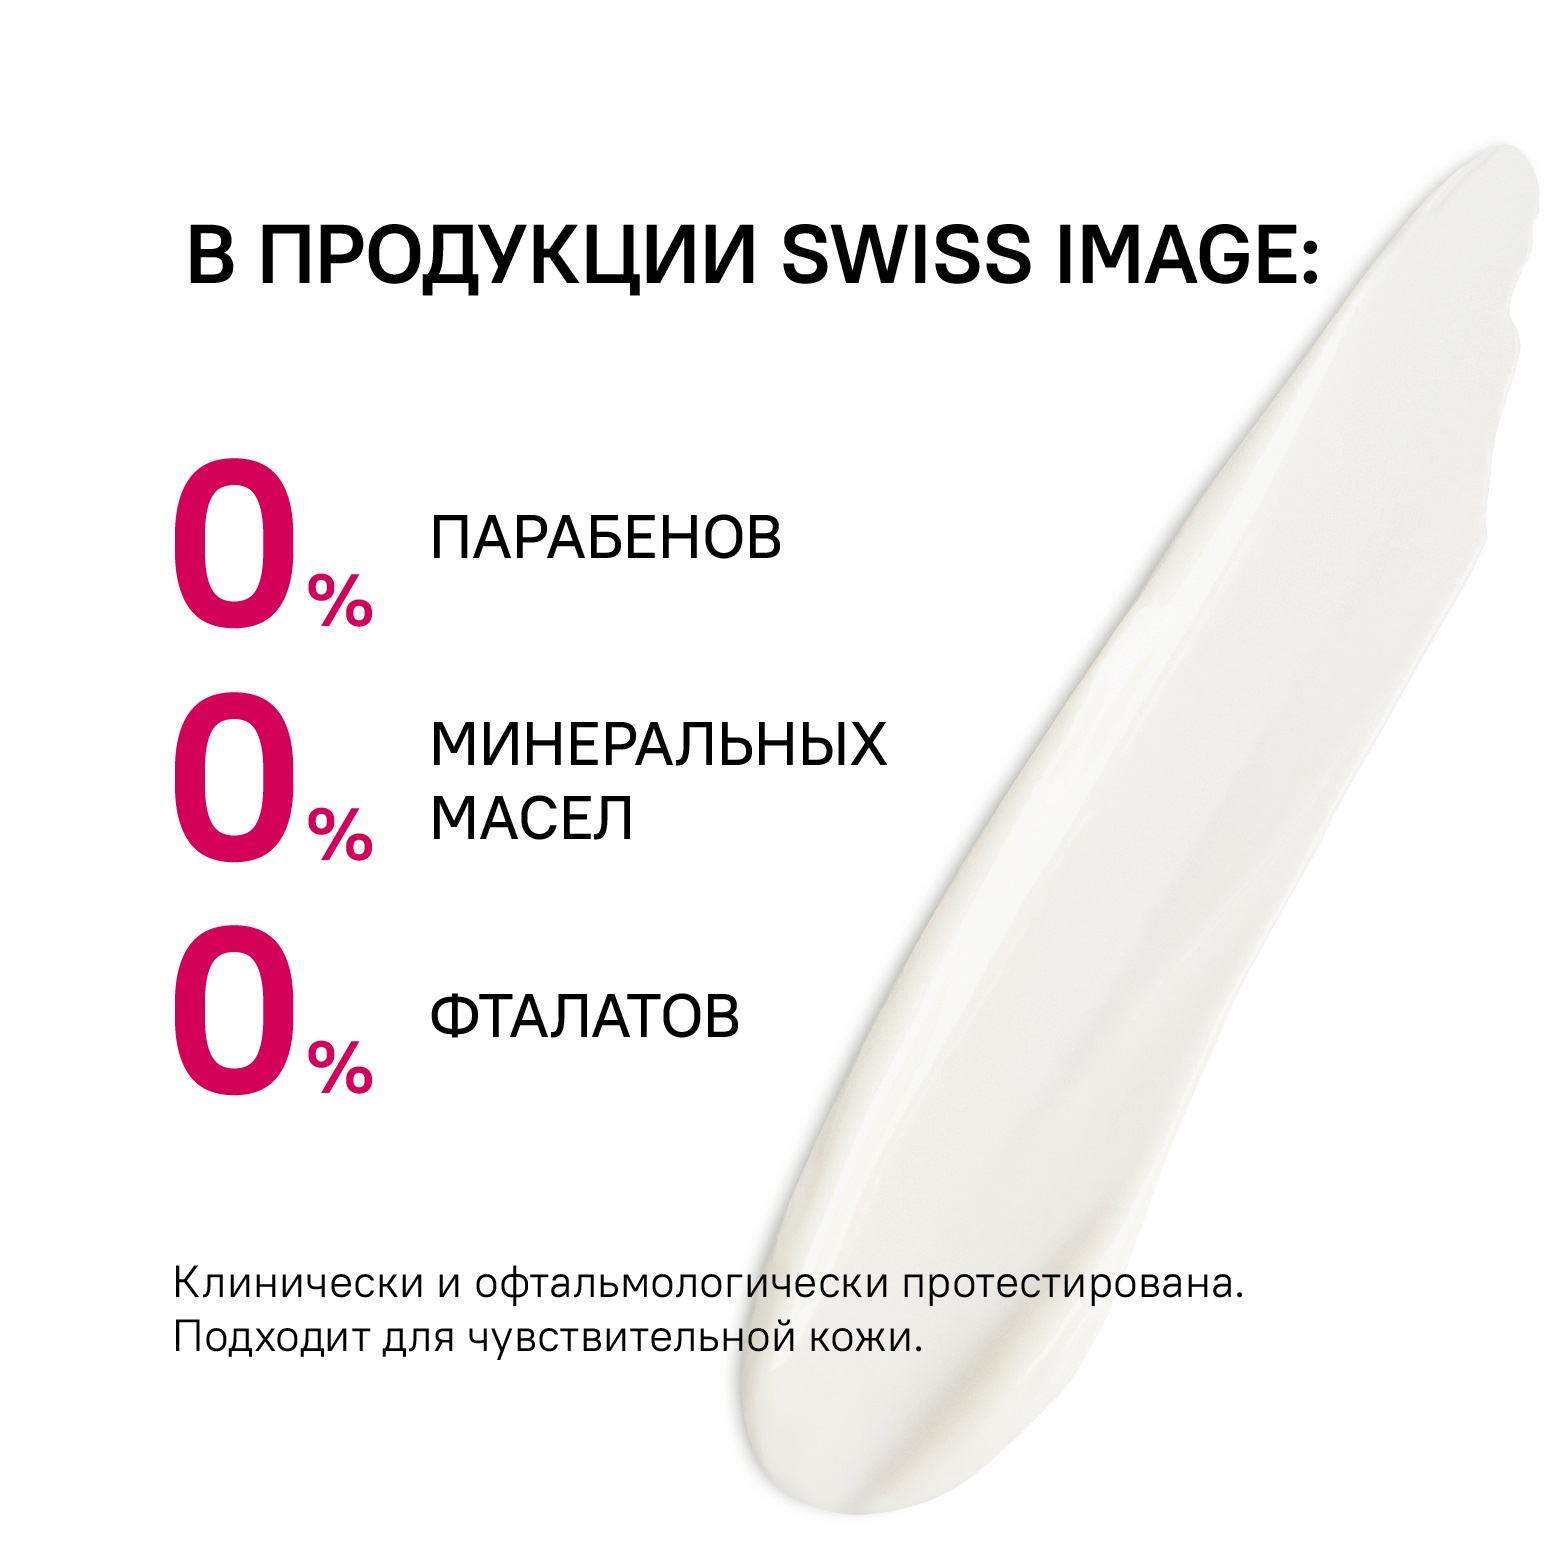 Ночной крем для лица Swiss image против морщин 36+ Антивозрастной уход 50мл - фото 9